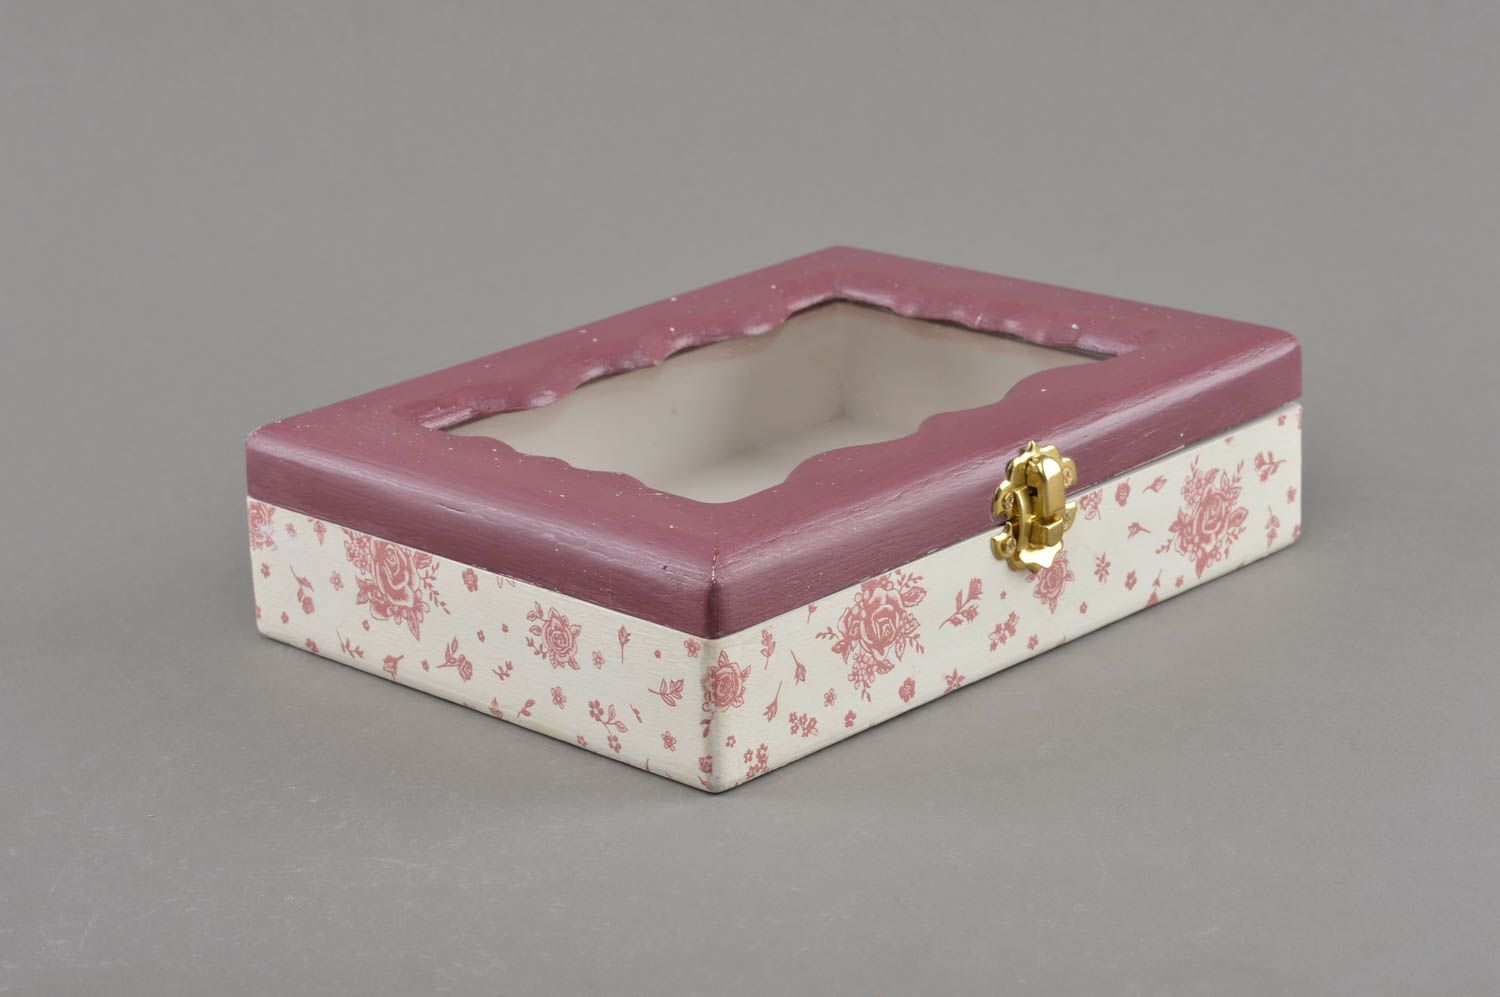 Caja de madera hecha a mano con tapa de cristal decorada en técnica de decoupage foto 1